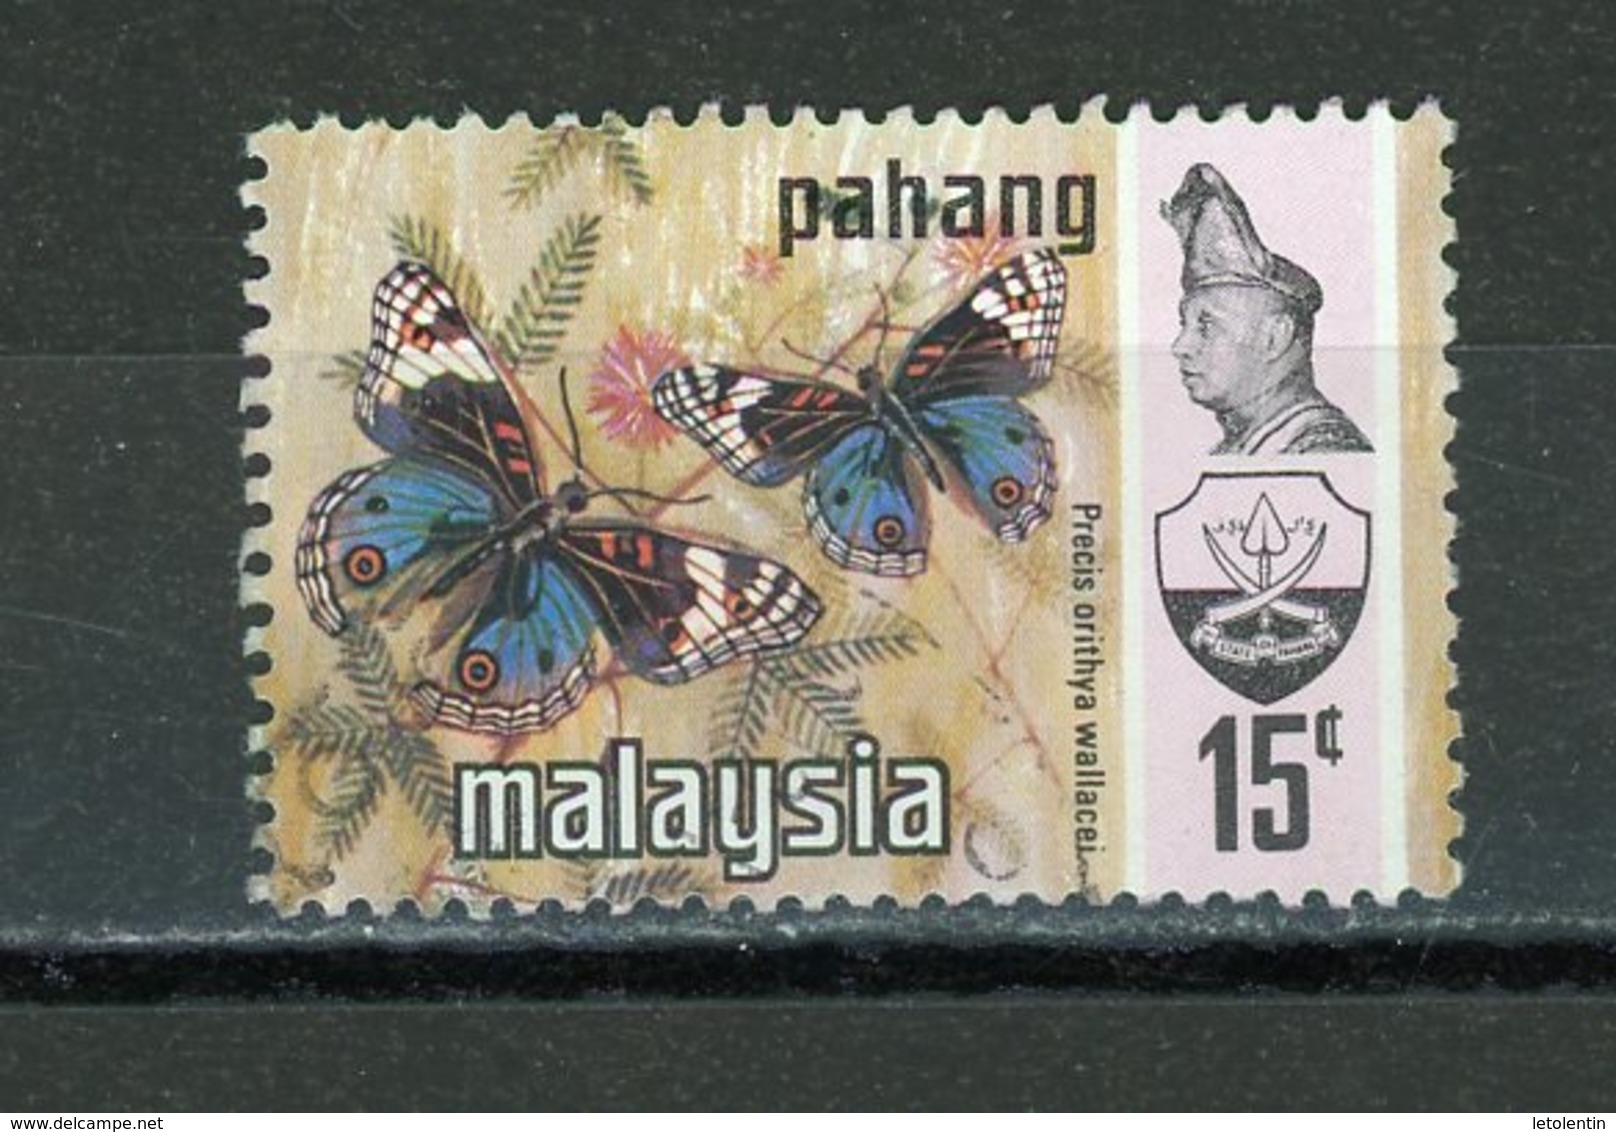 MALAYSIA - PAHANG (GB) : PAPILLONS N° Yvert 85 Obli. - Pahang